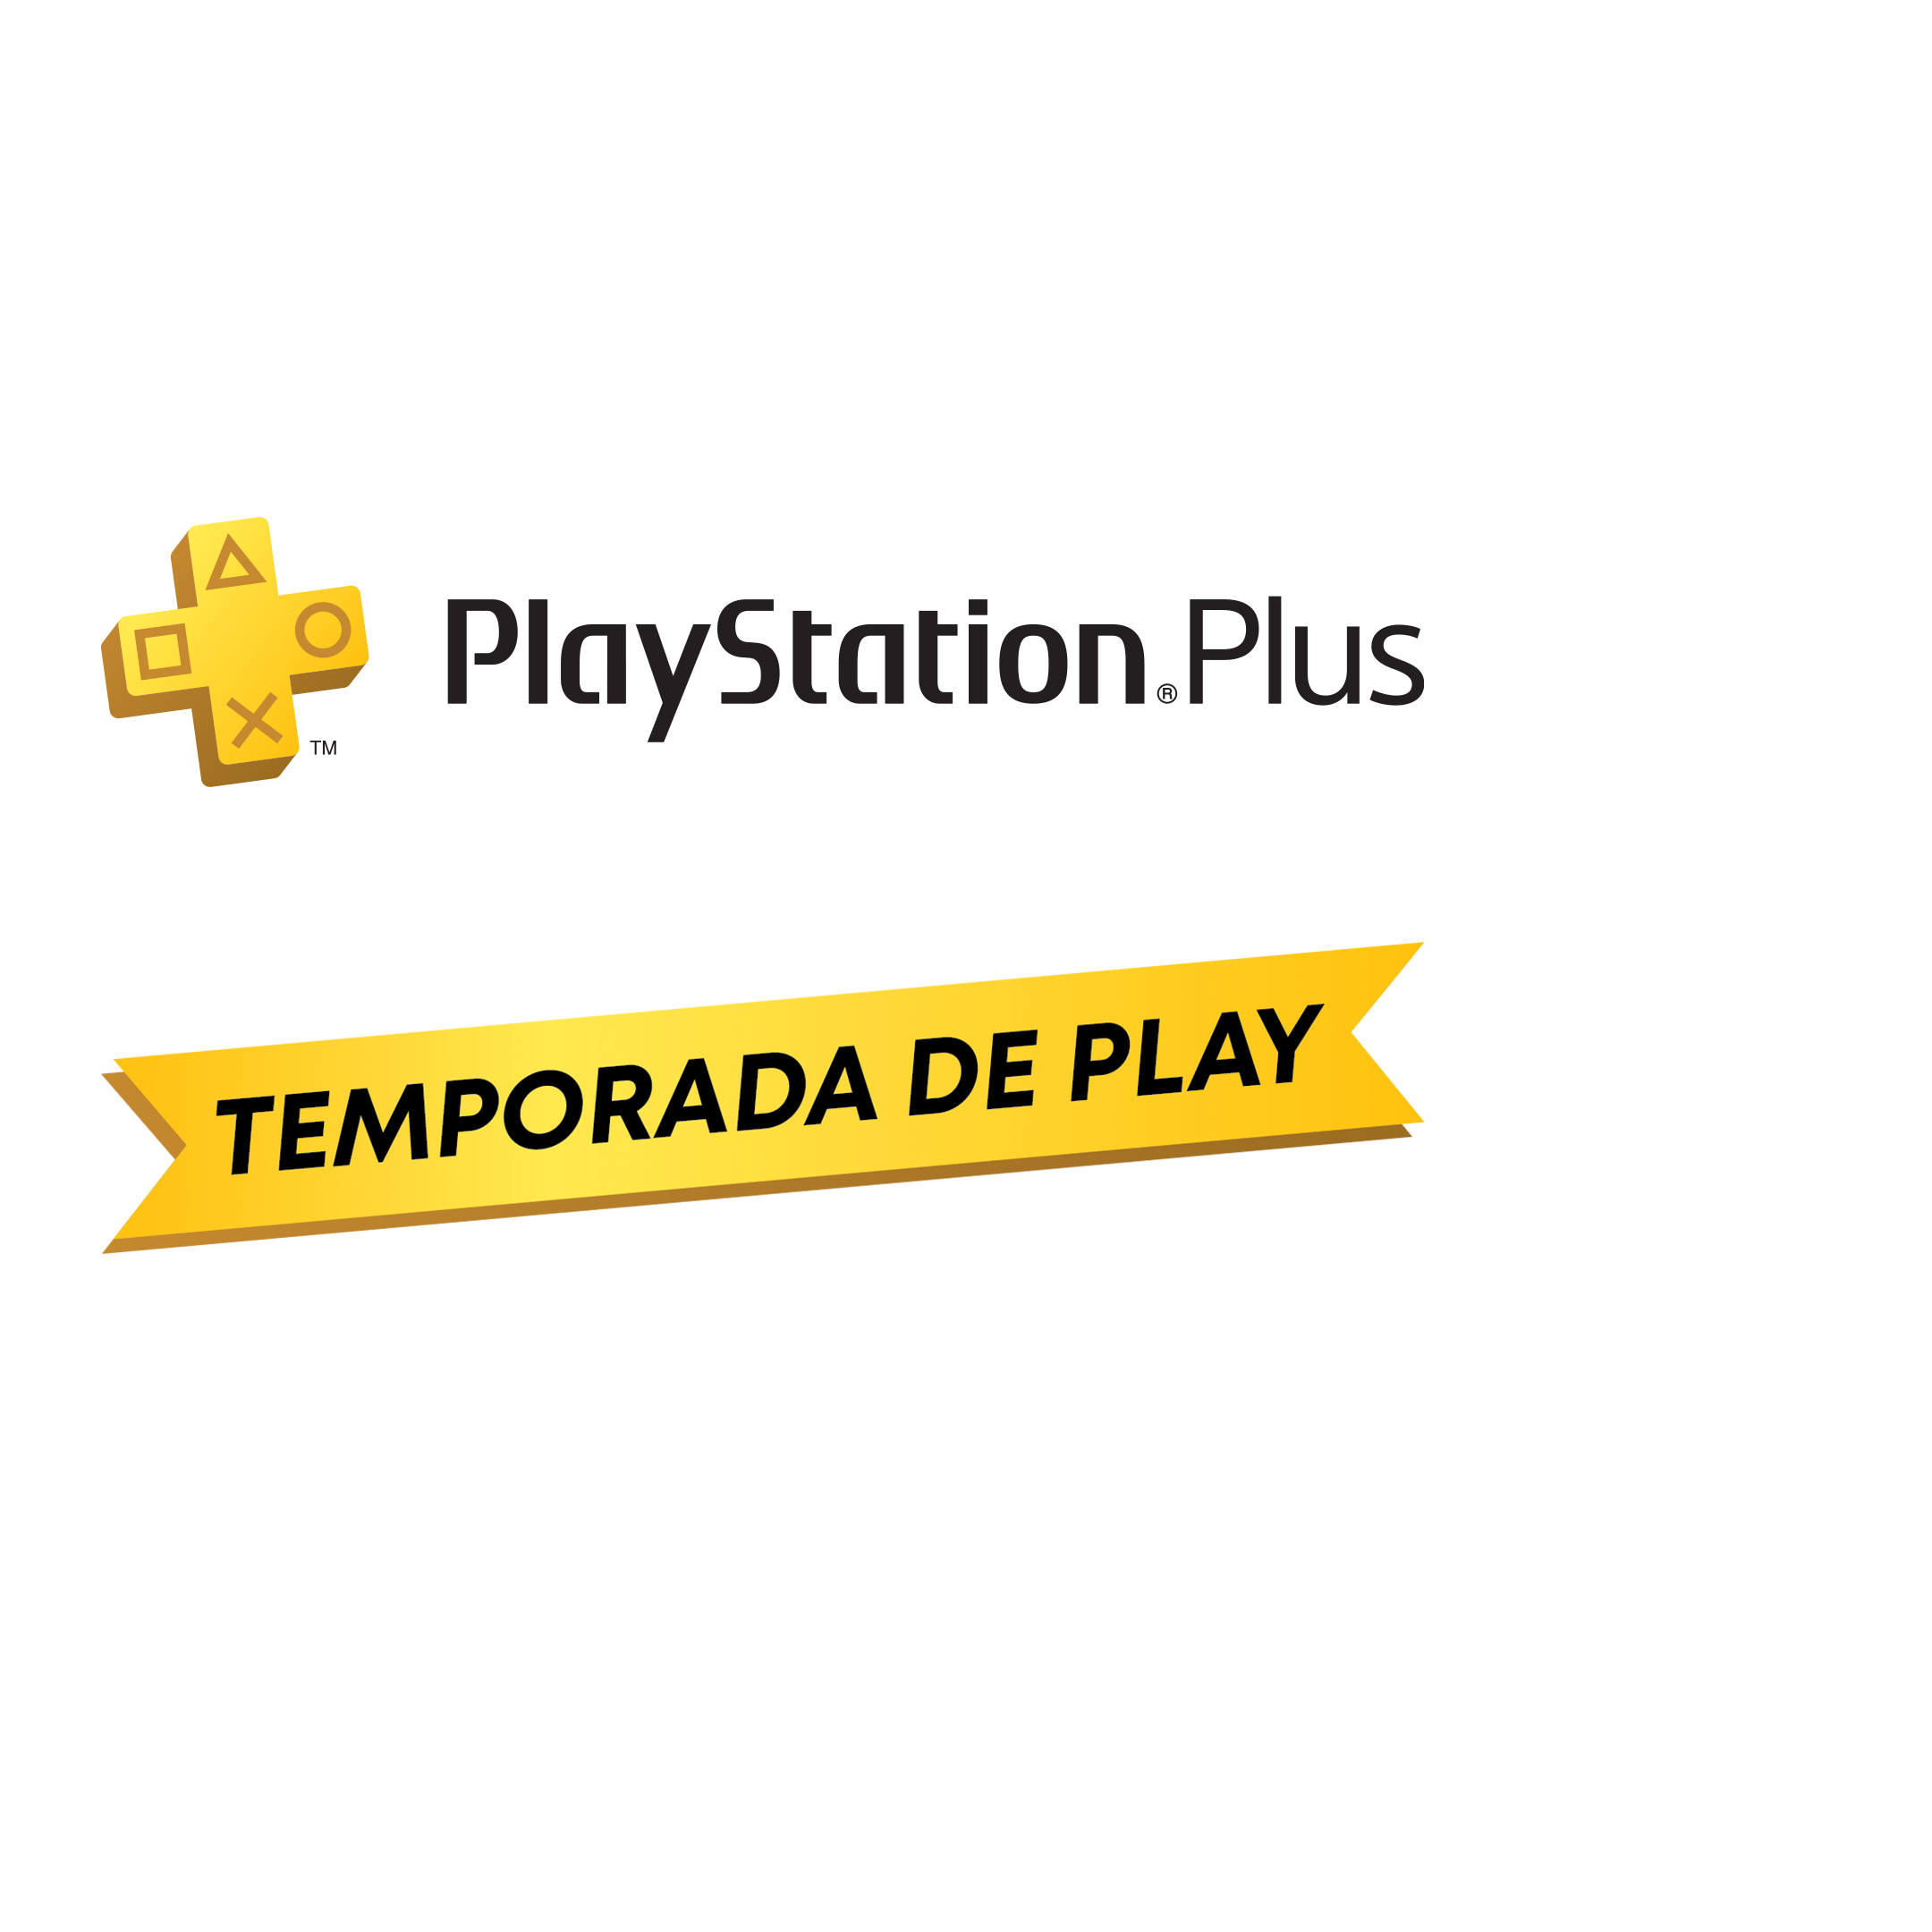 PSN PLUS EXTRA 12 MESES CUENTA PRINCIPAL PS4, Juegos Digitales Colombia